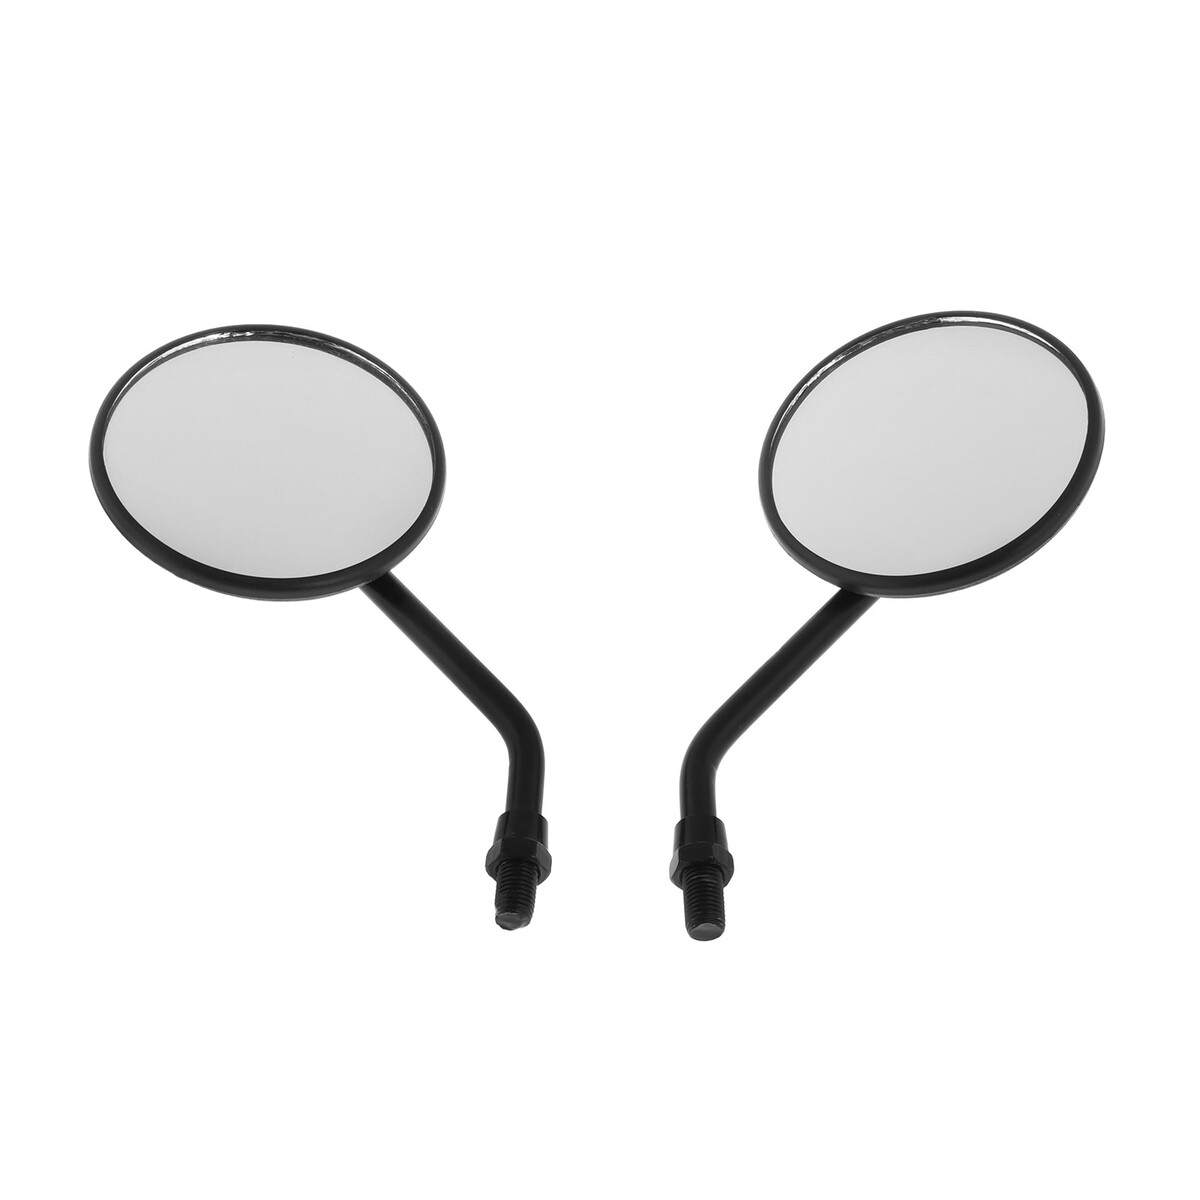 Зеркала задние для мото, высота 18,5 см, d 8,5 см, резьба 8 мм, набор 2 шт зеркала не отражают пустоту